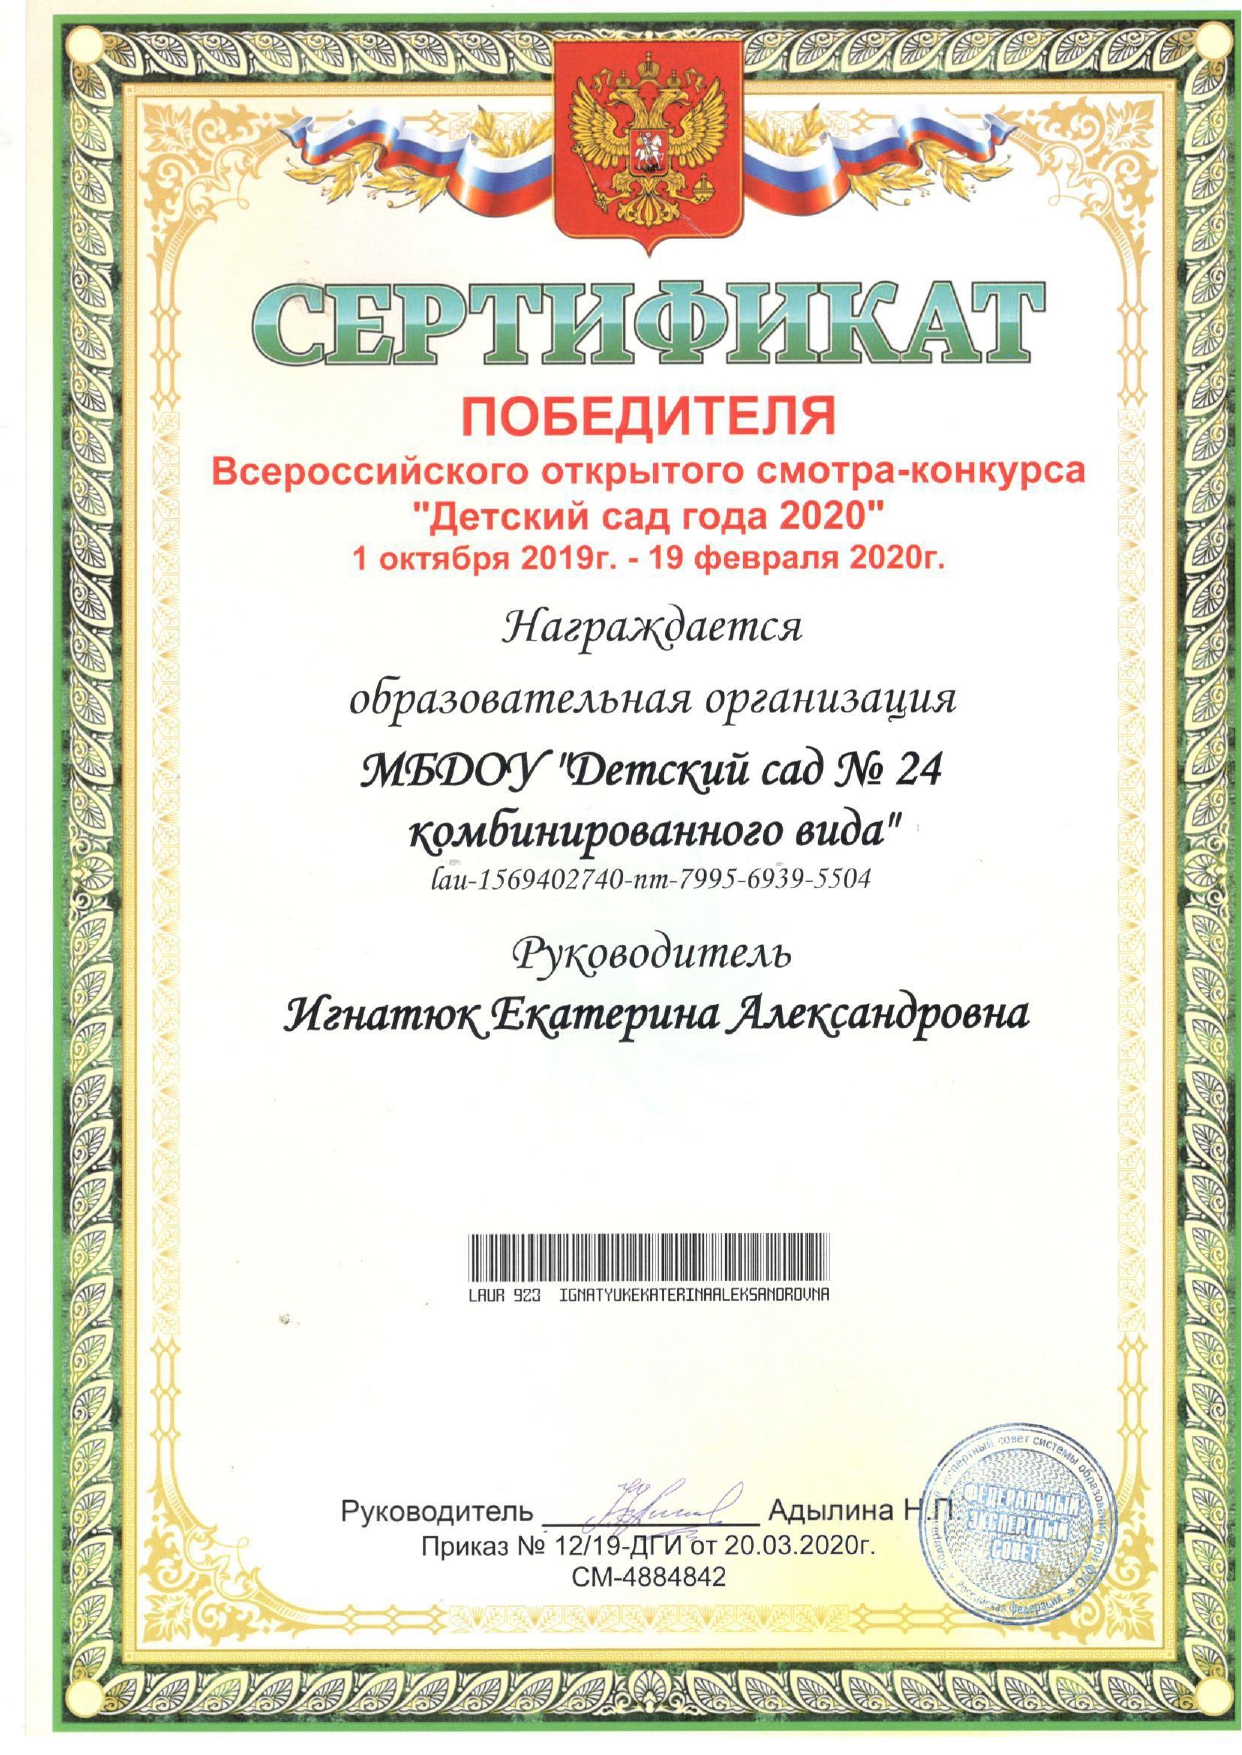 Сертификат page 0001